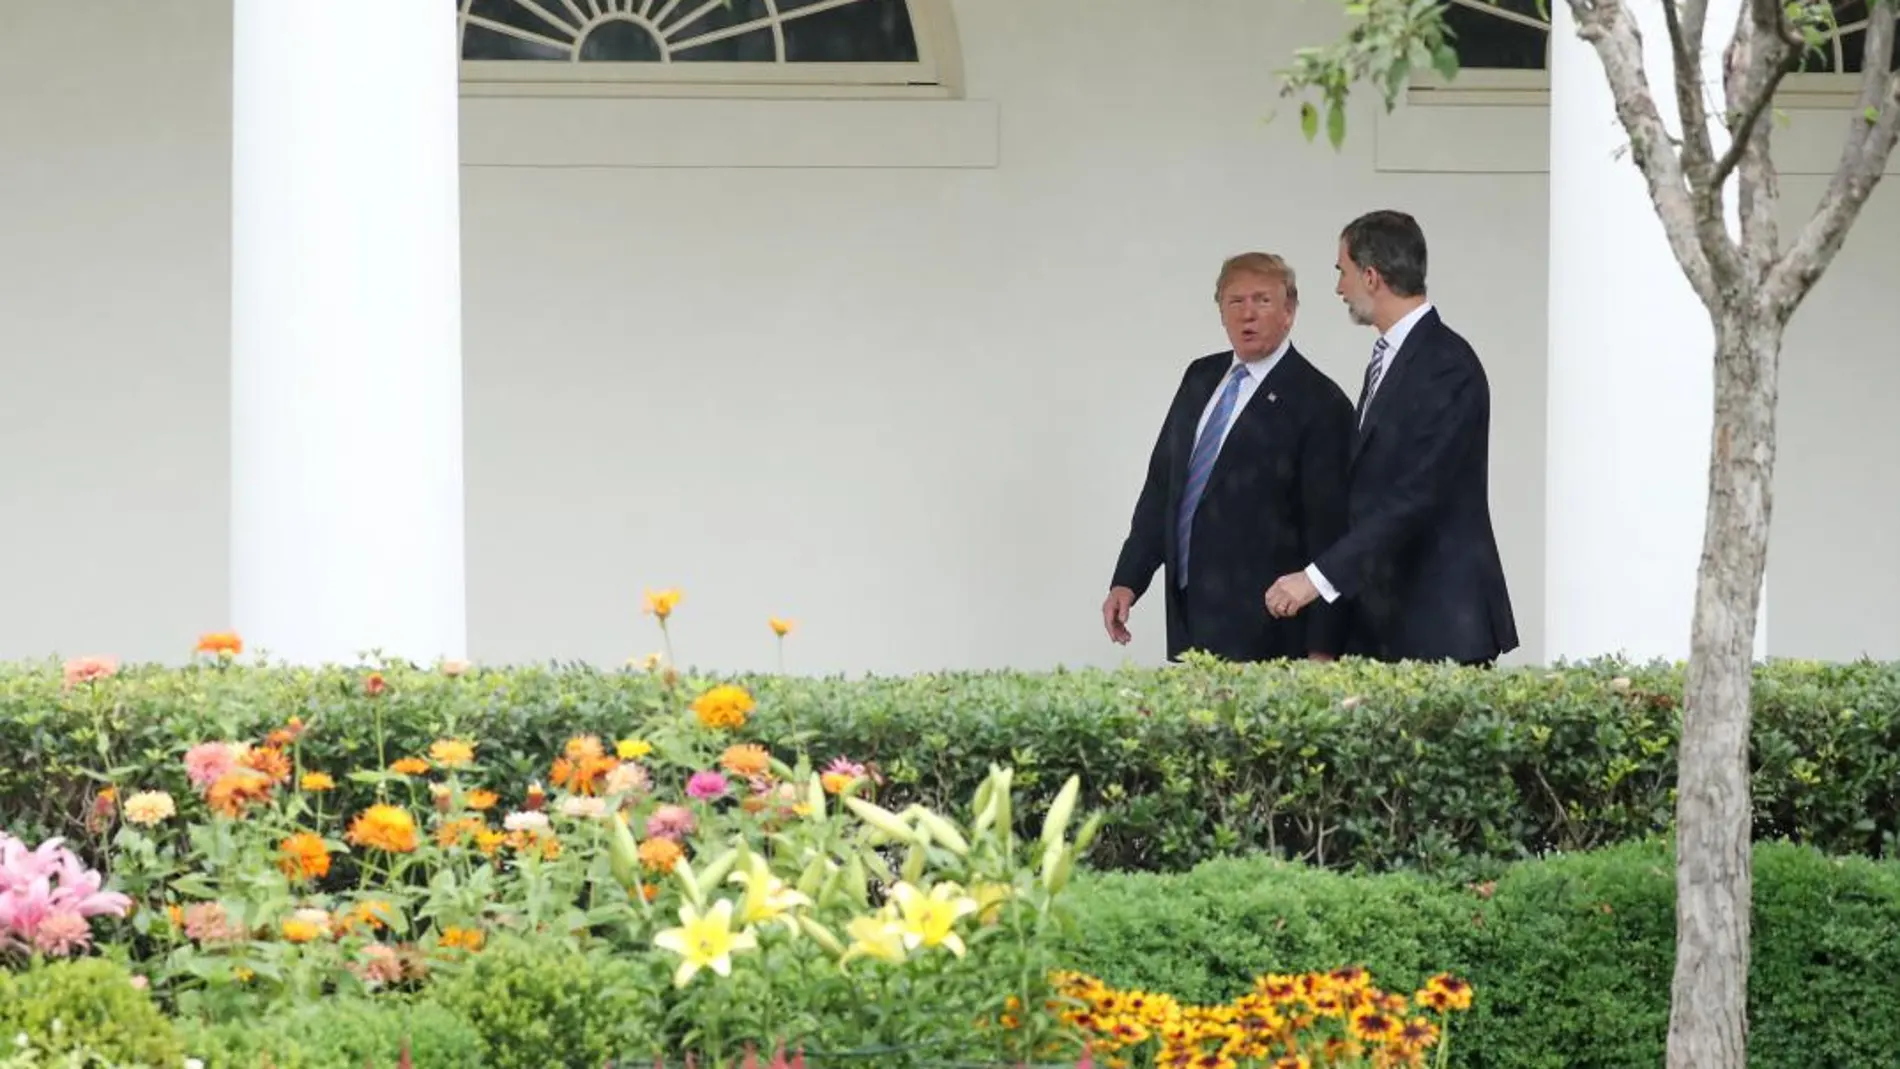 El rey Felipe VI camina junto a Donald Trump mientras ambos dialogan por los jardines de la Casa Blanca